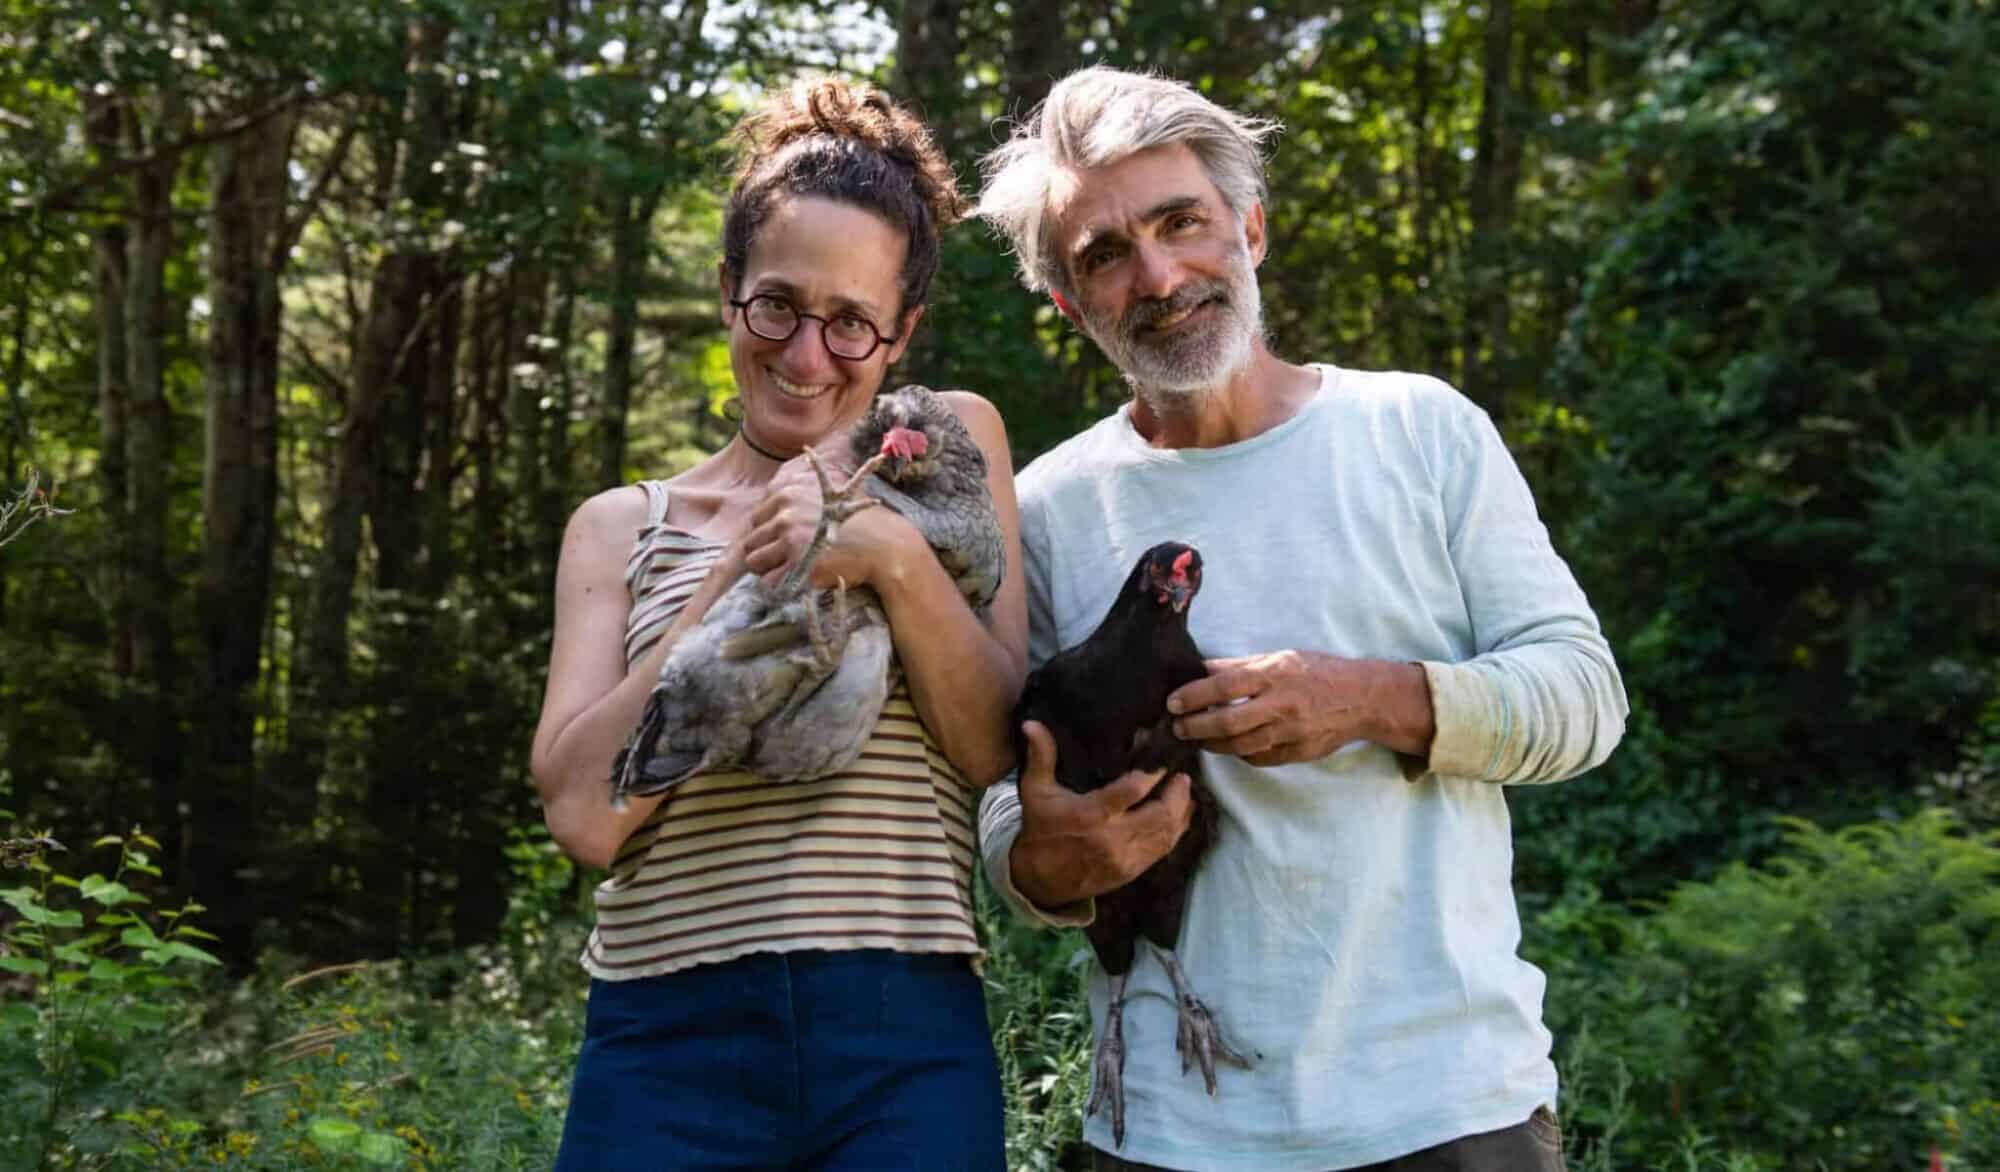 Erica Berman and Allain Ollier on their non profit farm Veggies to Table